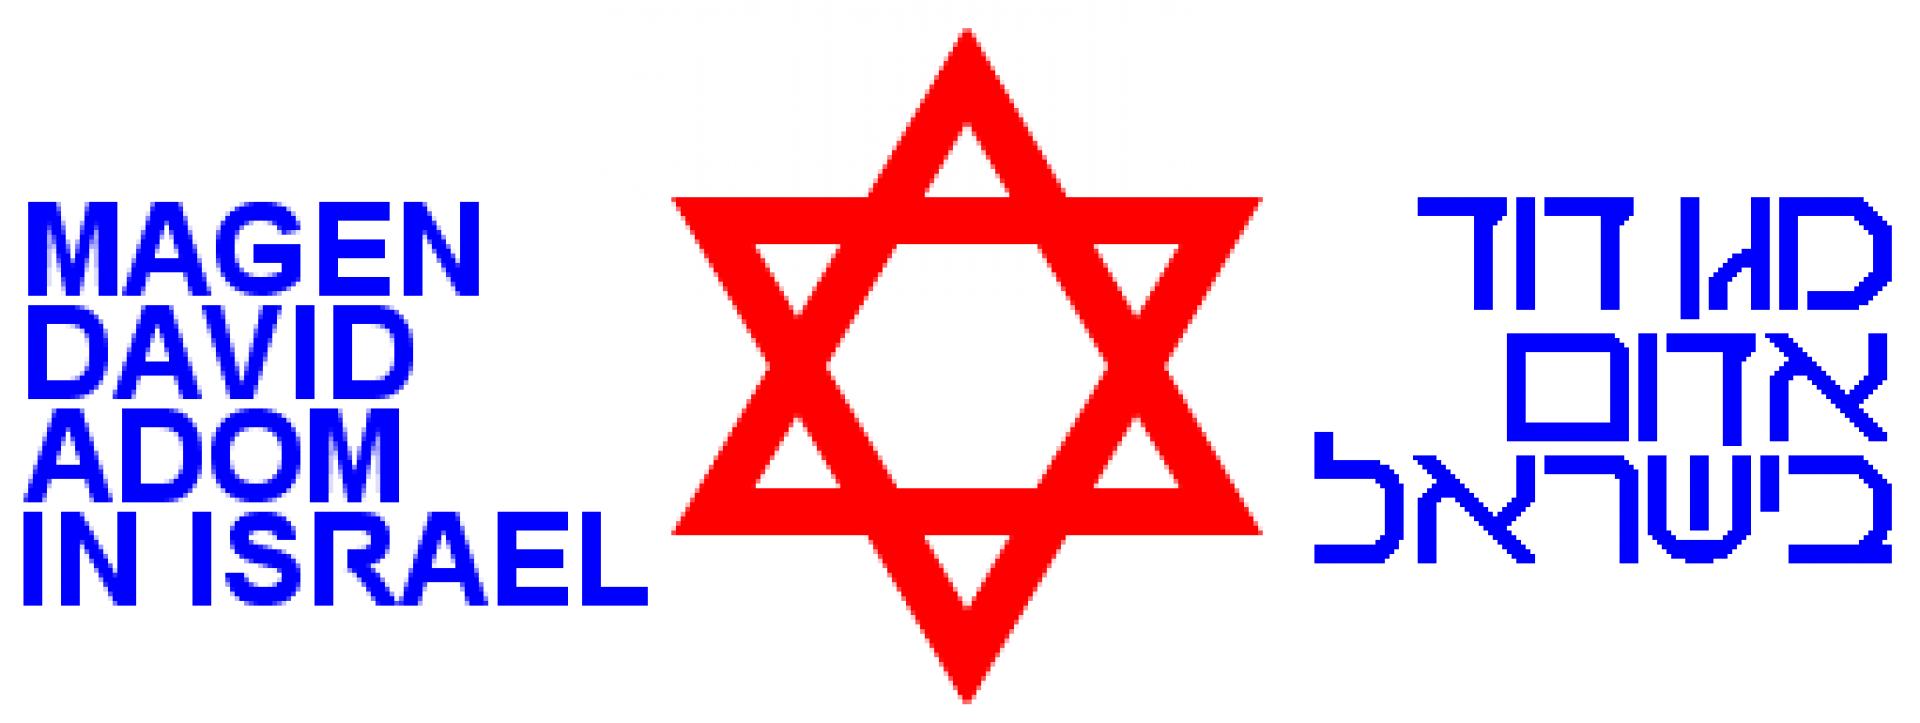 Magen David Adom ((Hebreiskt namn: מגן דוד אדום, förkortn. MDA)-logotyp